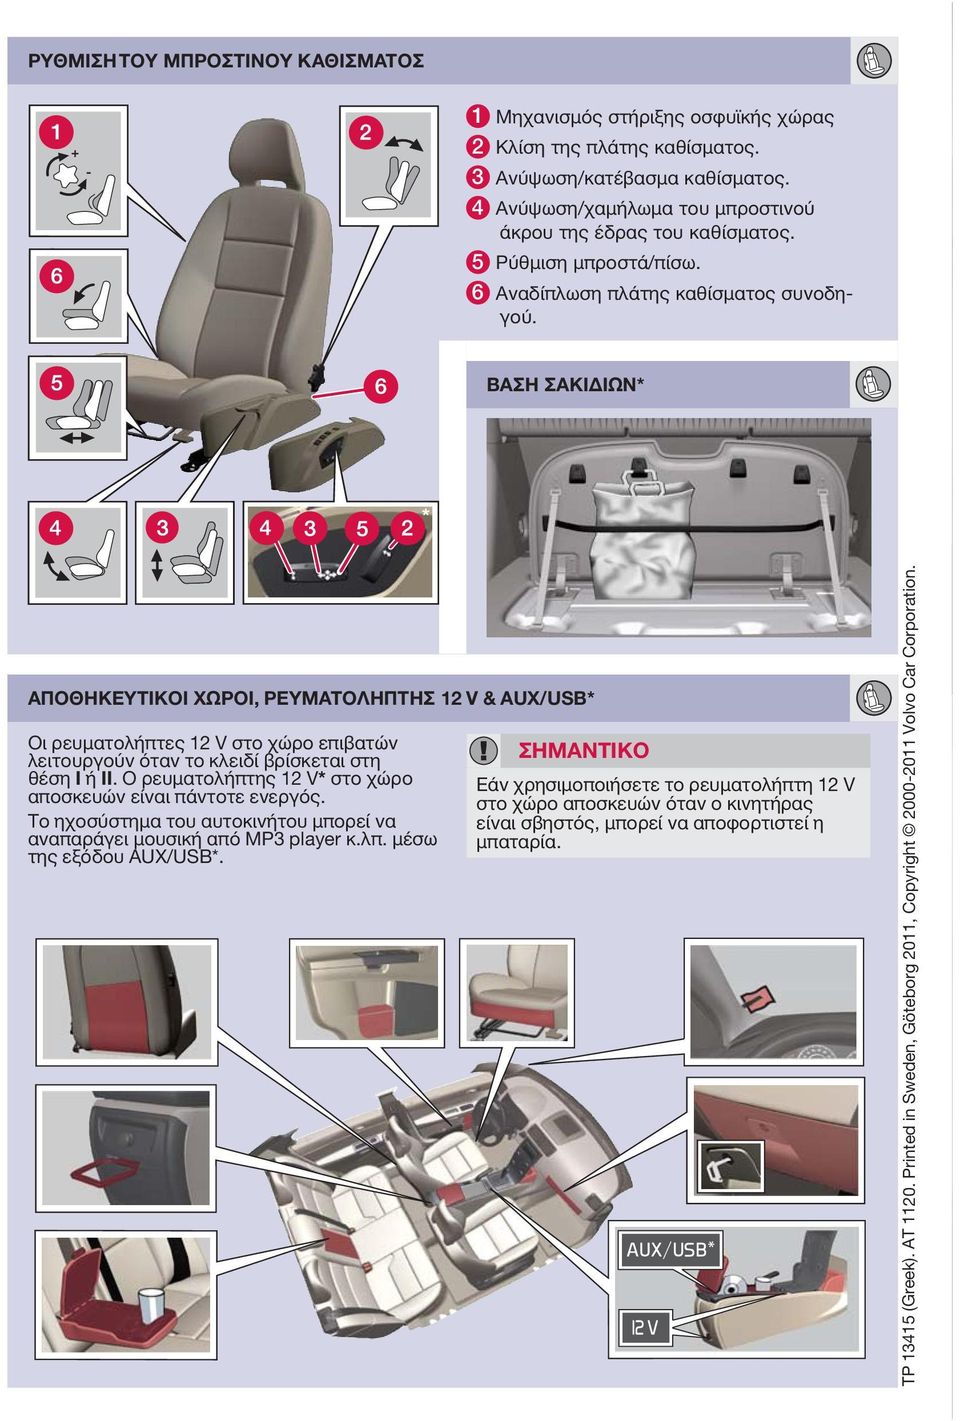 ΒΑΣΗ ΣΑΚΙΔΙΩΝ* ΑΠΟΘΗΚΕΥΤΙΚΟΙ ΧΩΡΟΙ, ΡΕΥΜΑΤΟΛΗΠΤΗΣ 12 V & AUX/USB* Οι ρευματολήπτες 12 V στο χώρο επιβατών λειτουργούν όταν το κλειδί βρίσκεται στη θέση I ή II.